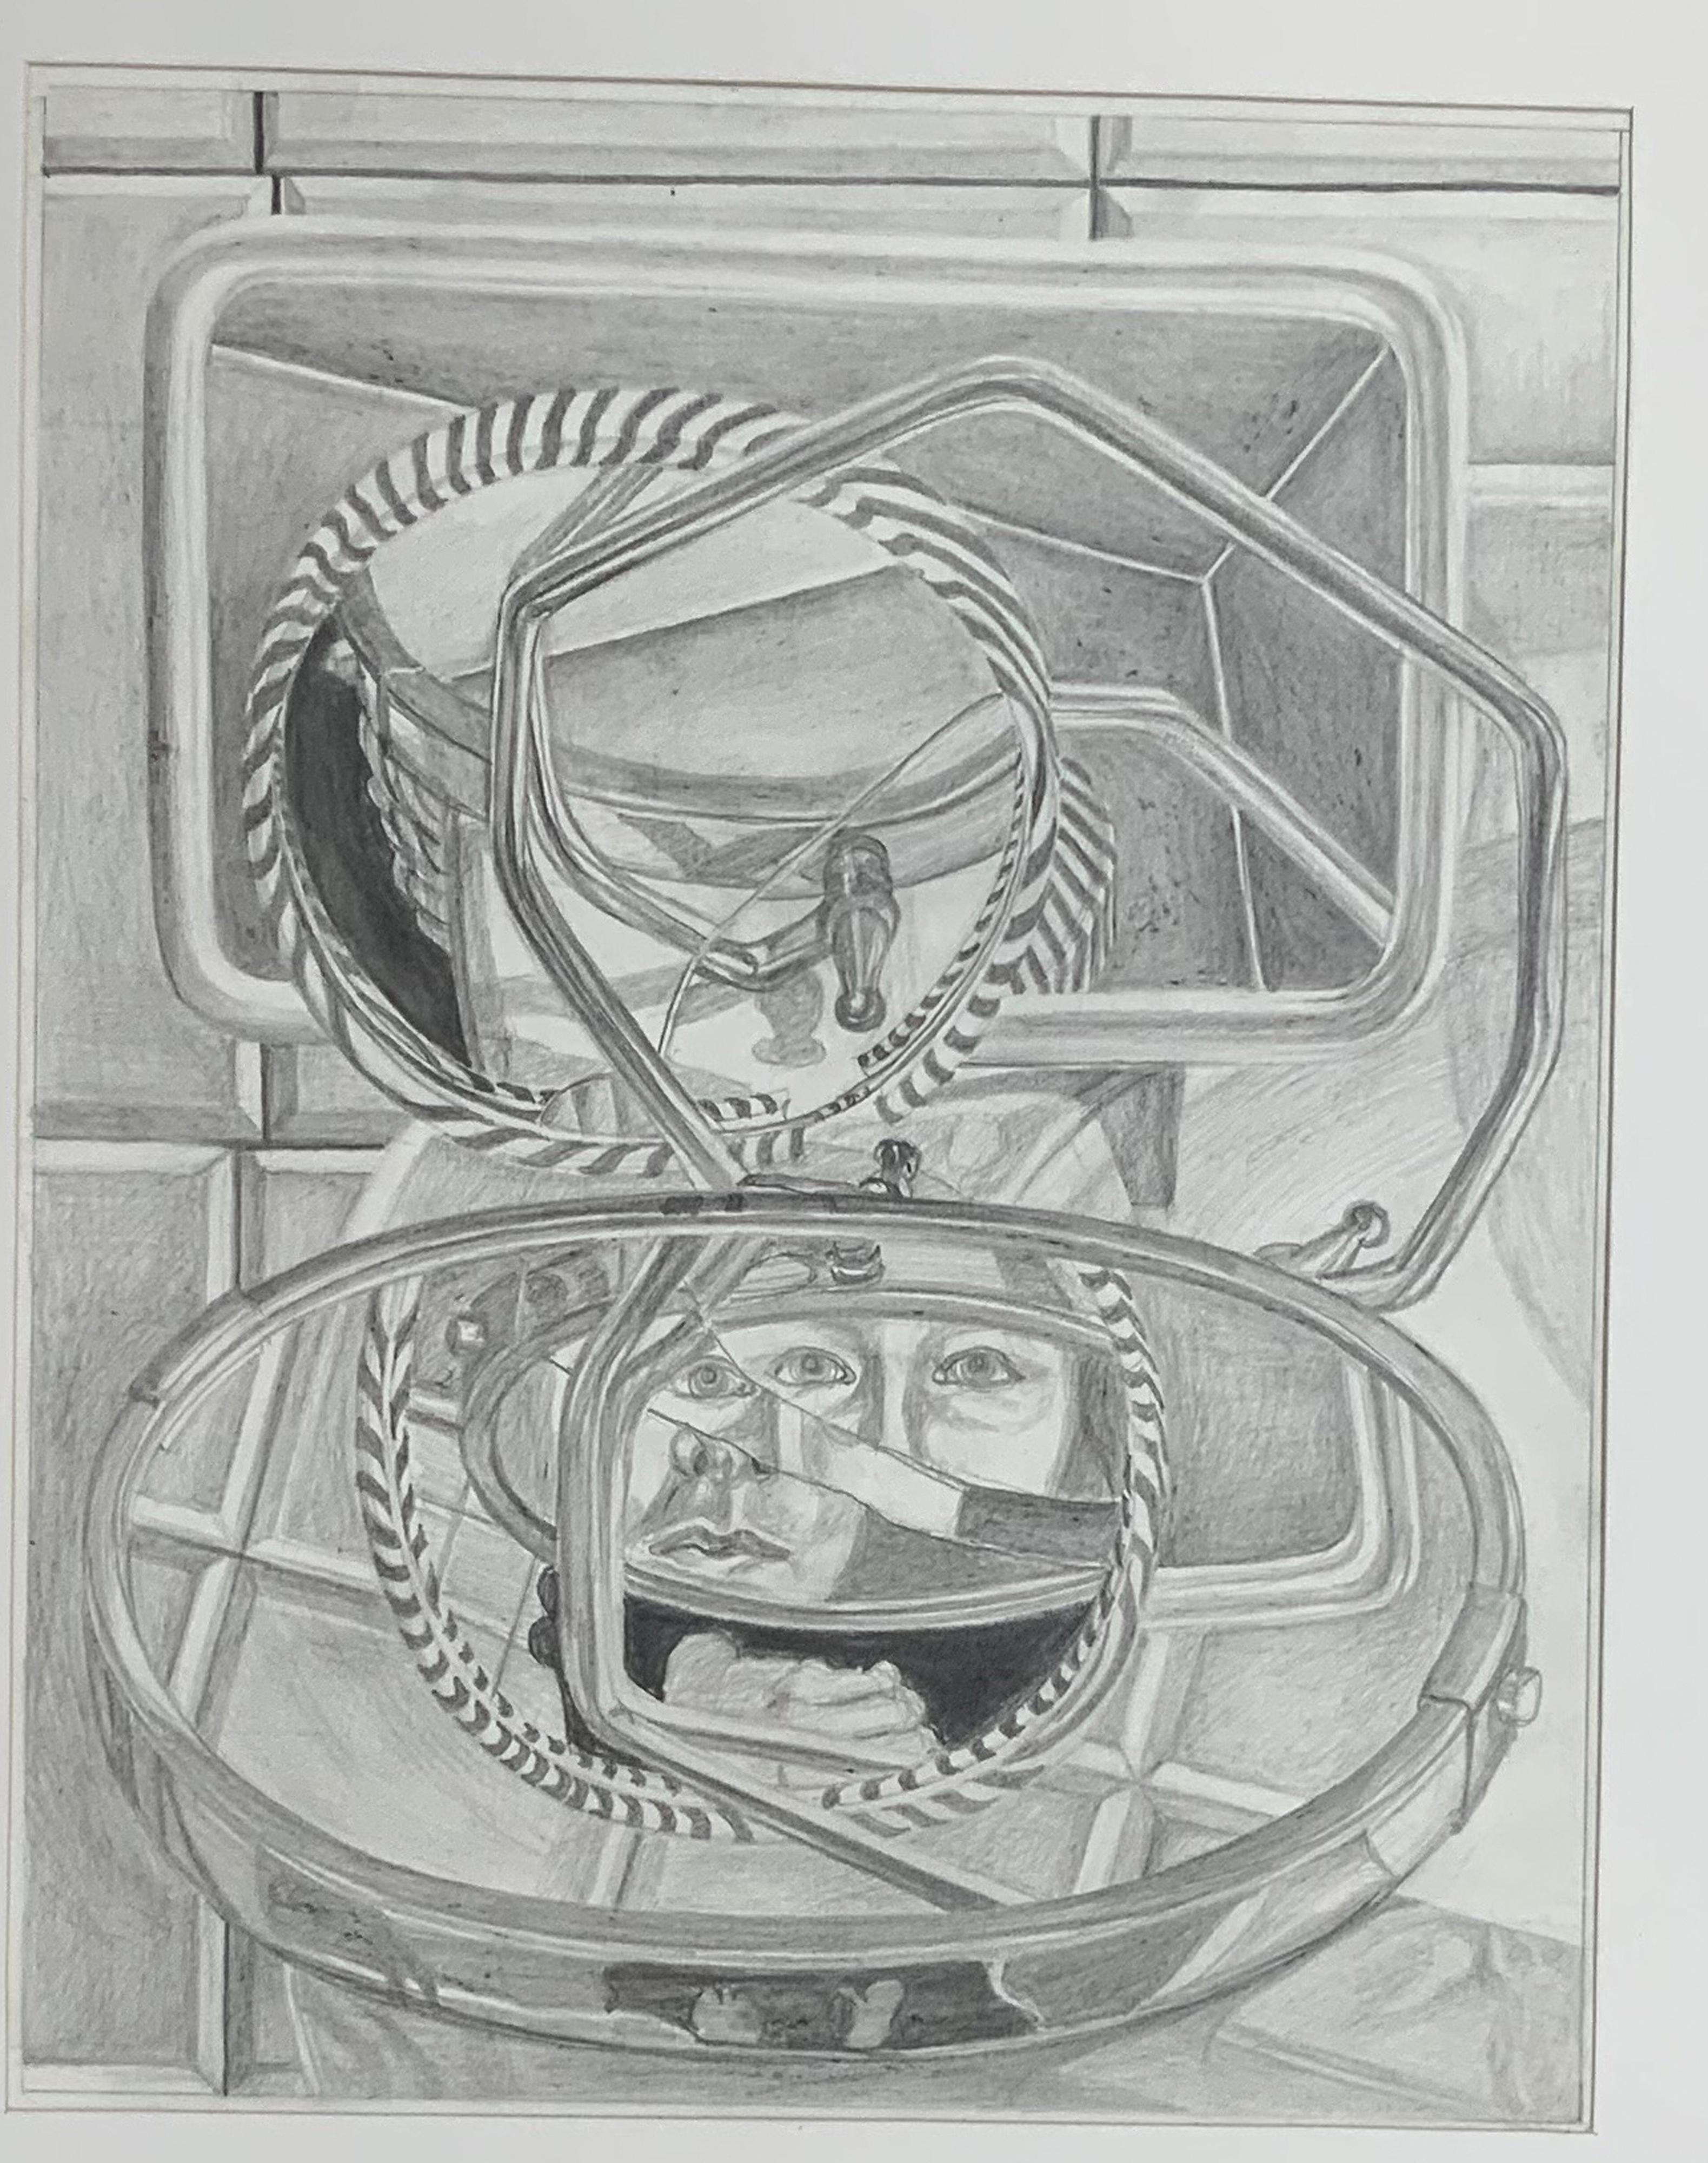 Galerie Barbara Thumm \ Anna Oppermann: Augen gespiegelt (AOp-65-003) \ Augen gespiegelt, ca. 1965